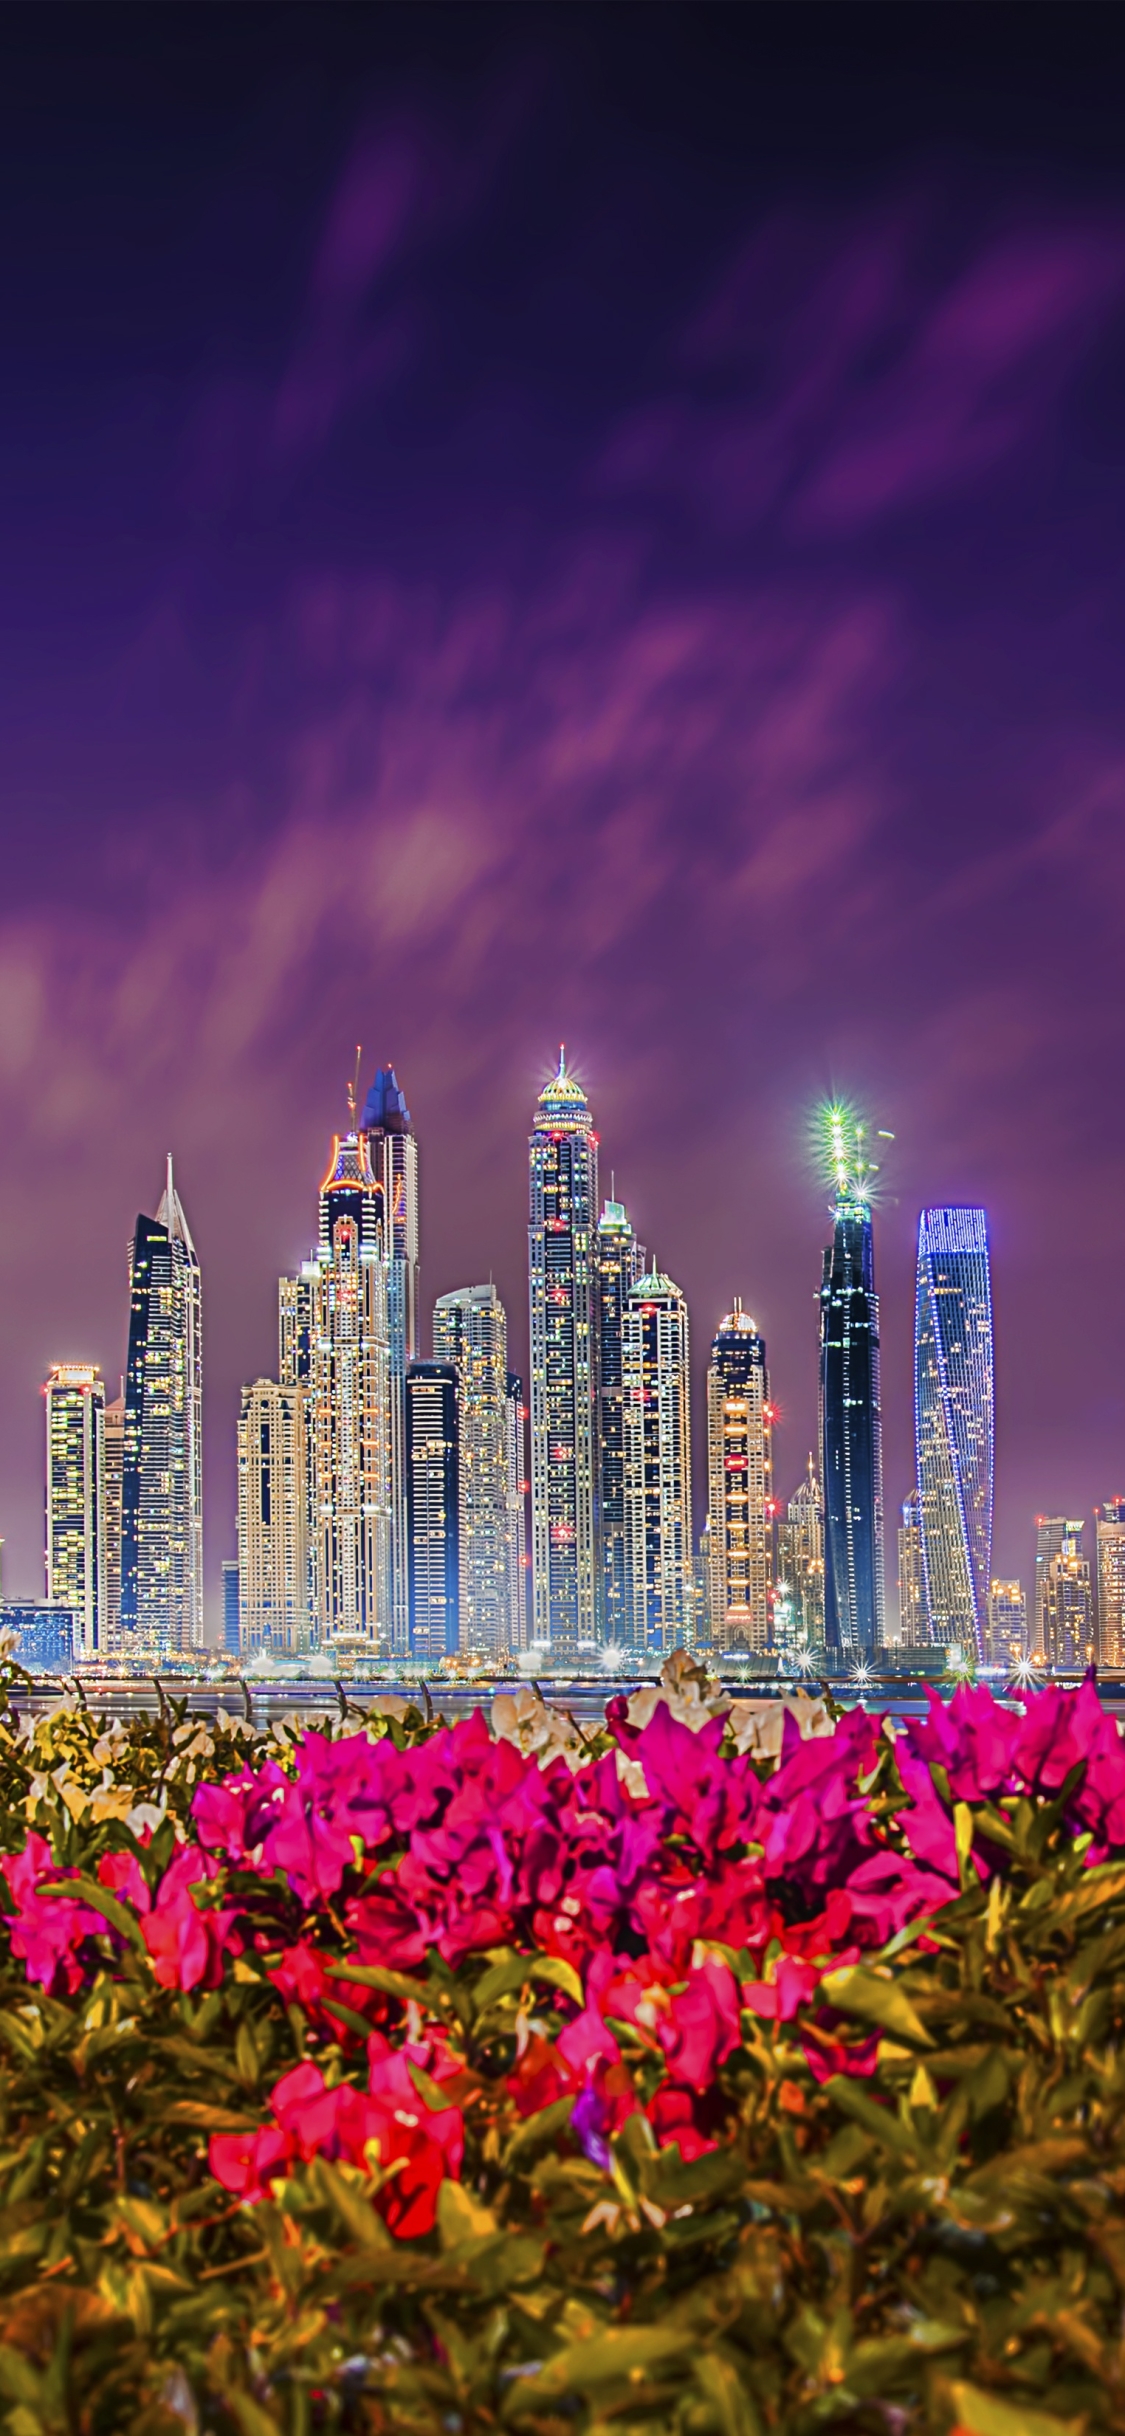 Descarga gratuita de fondo de pantalla para móvil de Ciudades, Noche, Ciudad, Rascacielos, Edificio, Flor, Emiratos Árabes Unidos, Hecho Por El Hombre, Dubái.